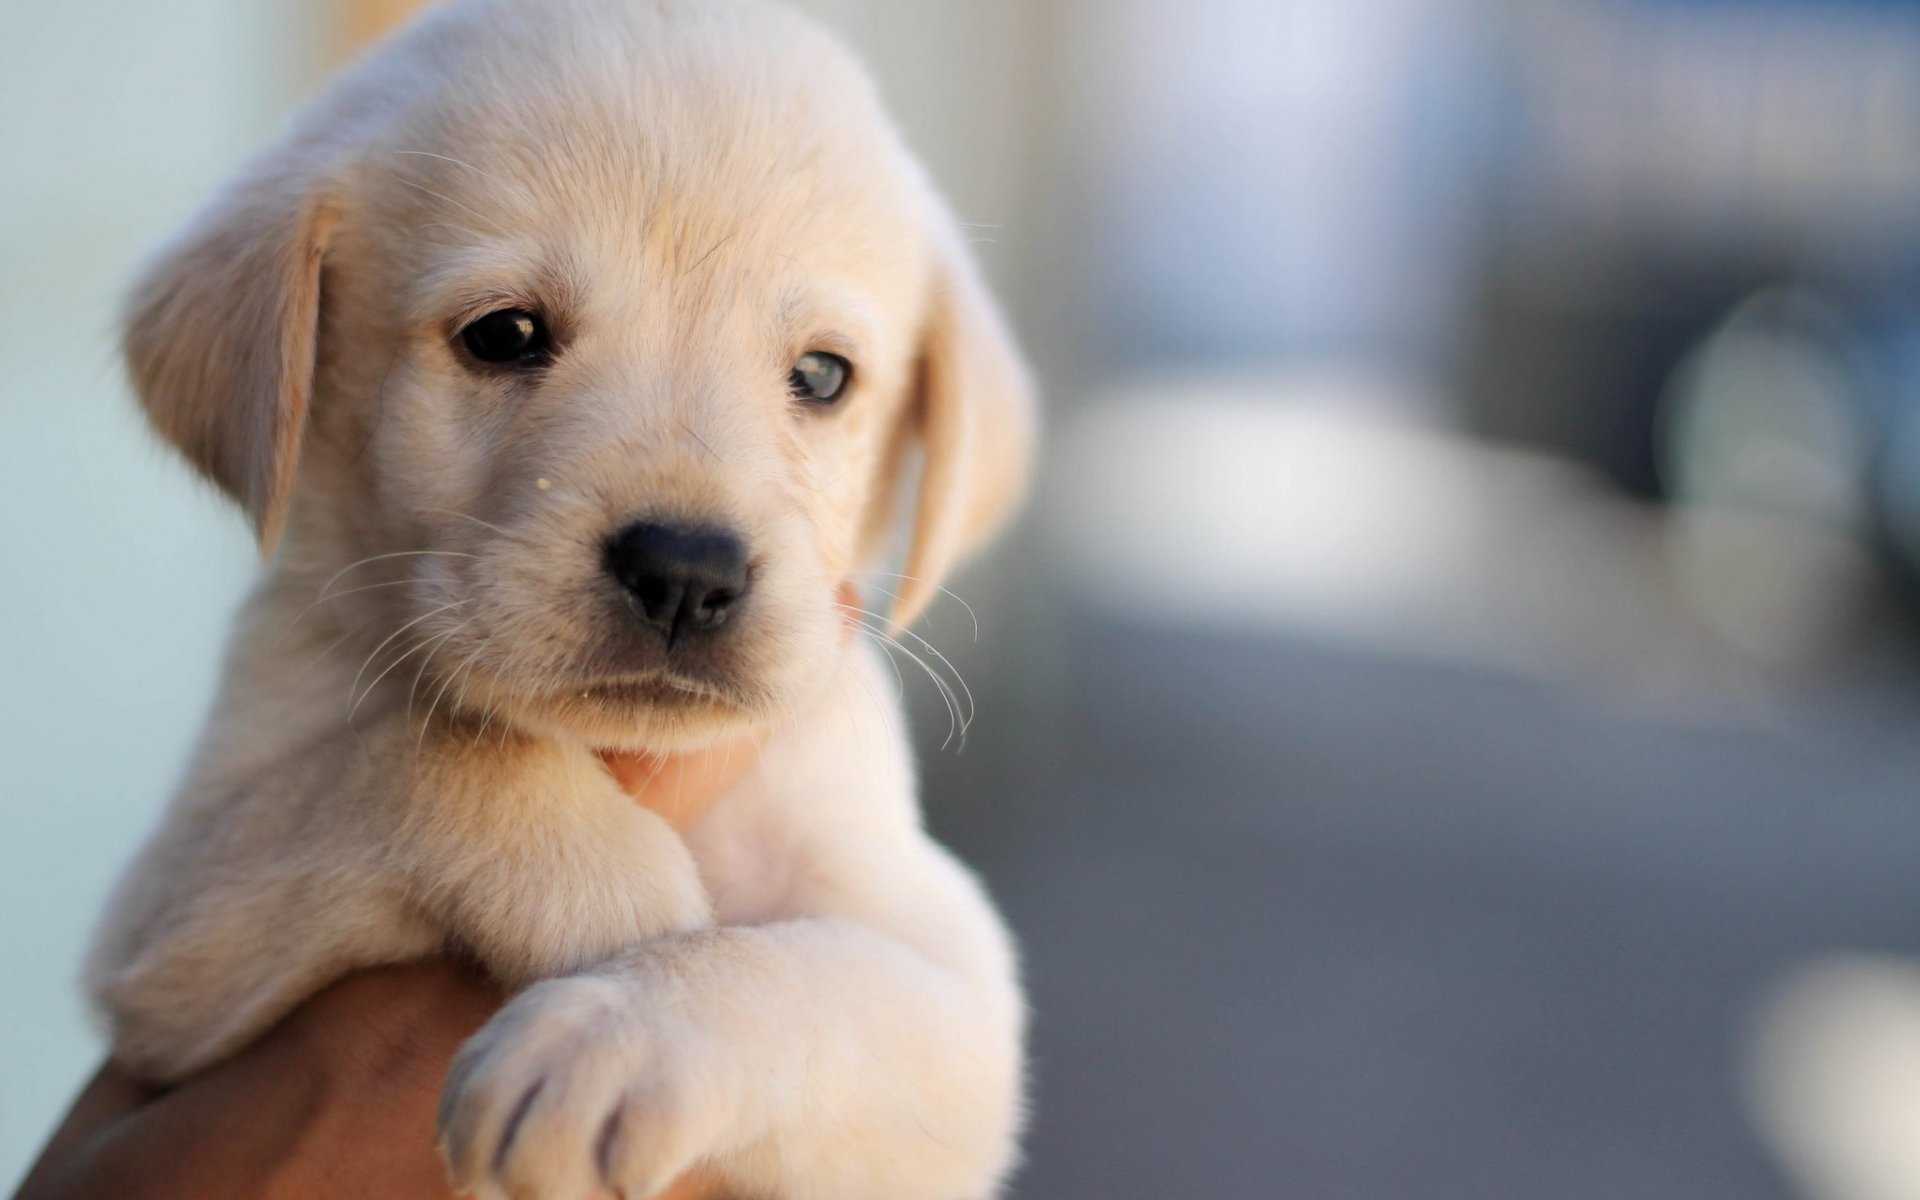 dogs, labrador, close up, cute, dog, animal, labrador retriever, puppy